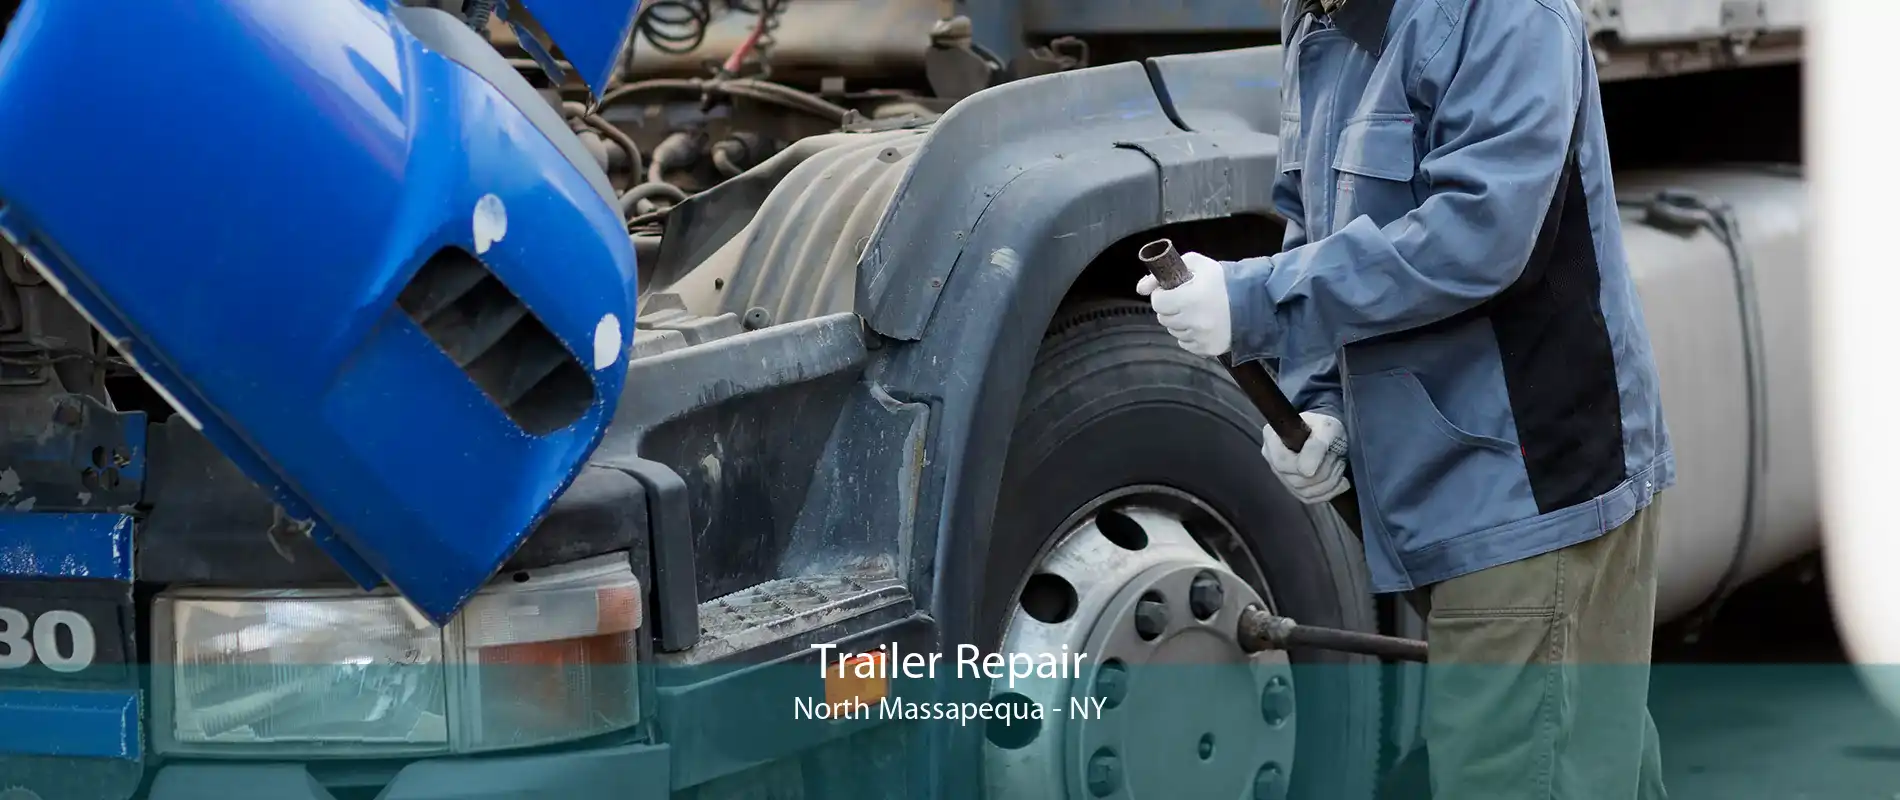 Trailer Repair North Massapequa - NY